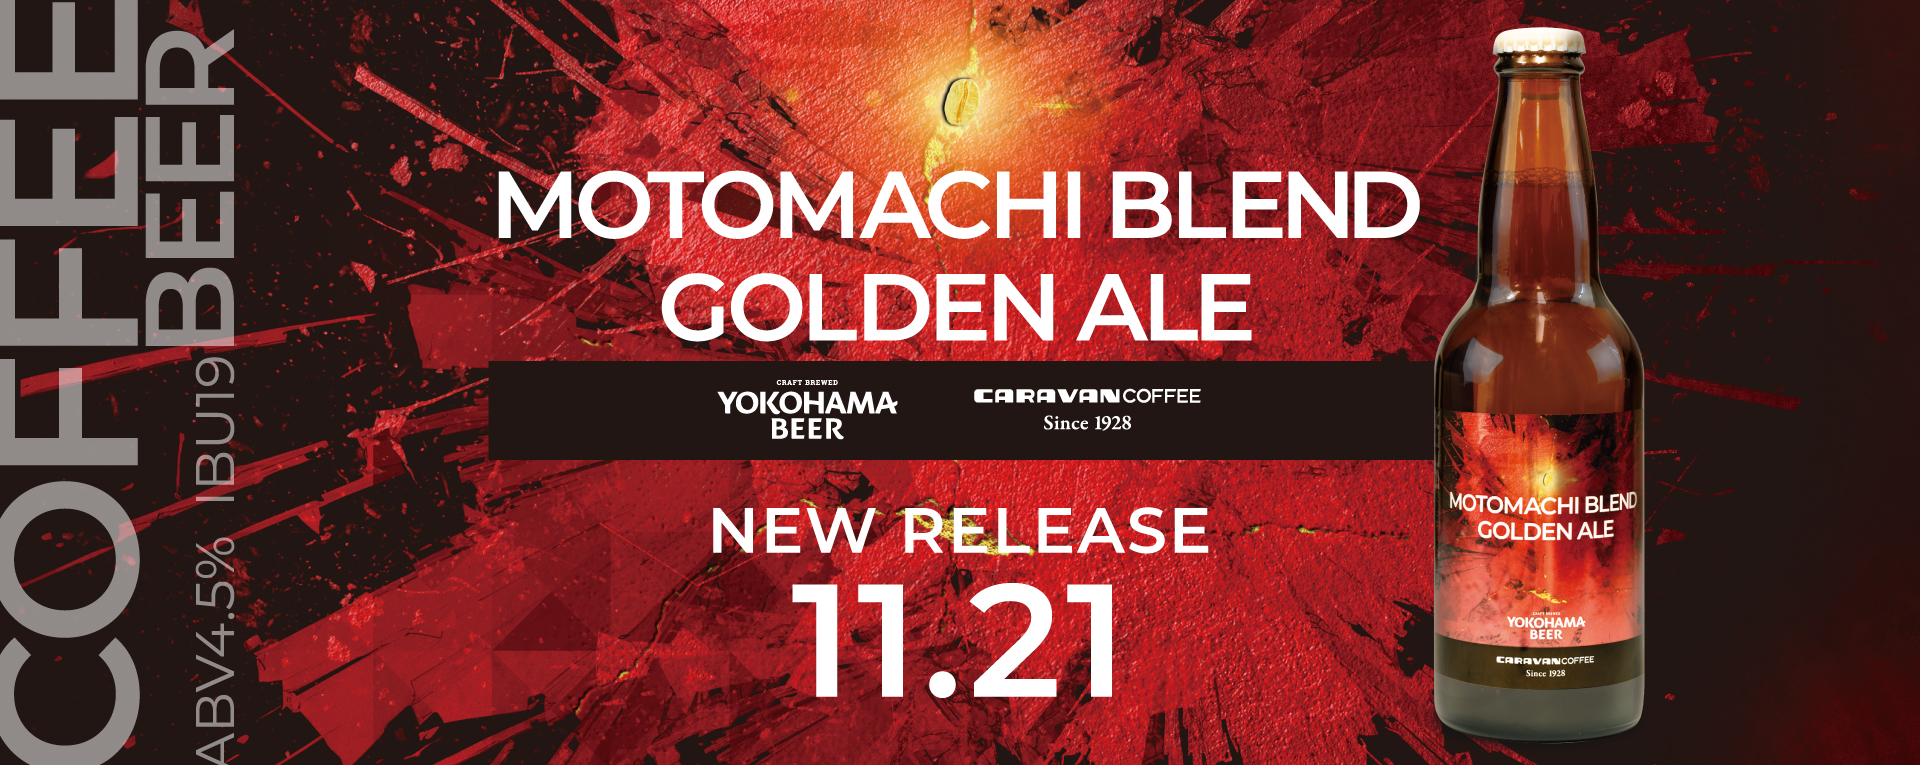 横浜ビール×キャラバンコーヒーコラボビール「MOTOMACHI BLEND GOLDEN ALE」限定発売